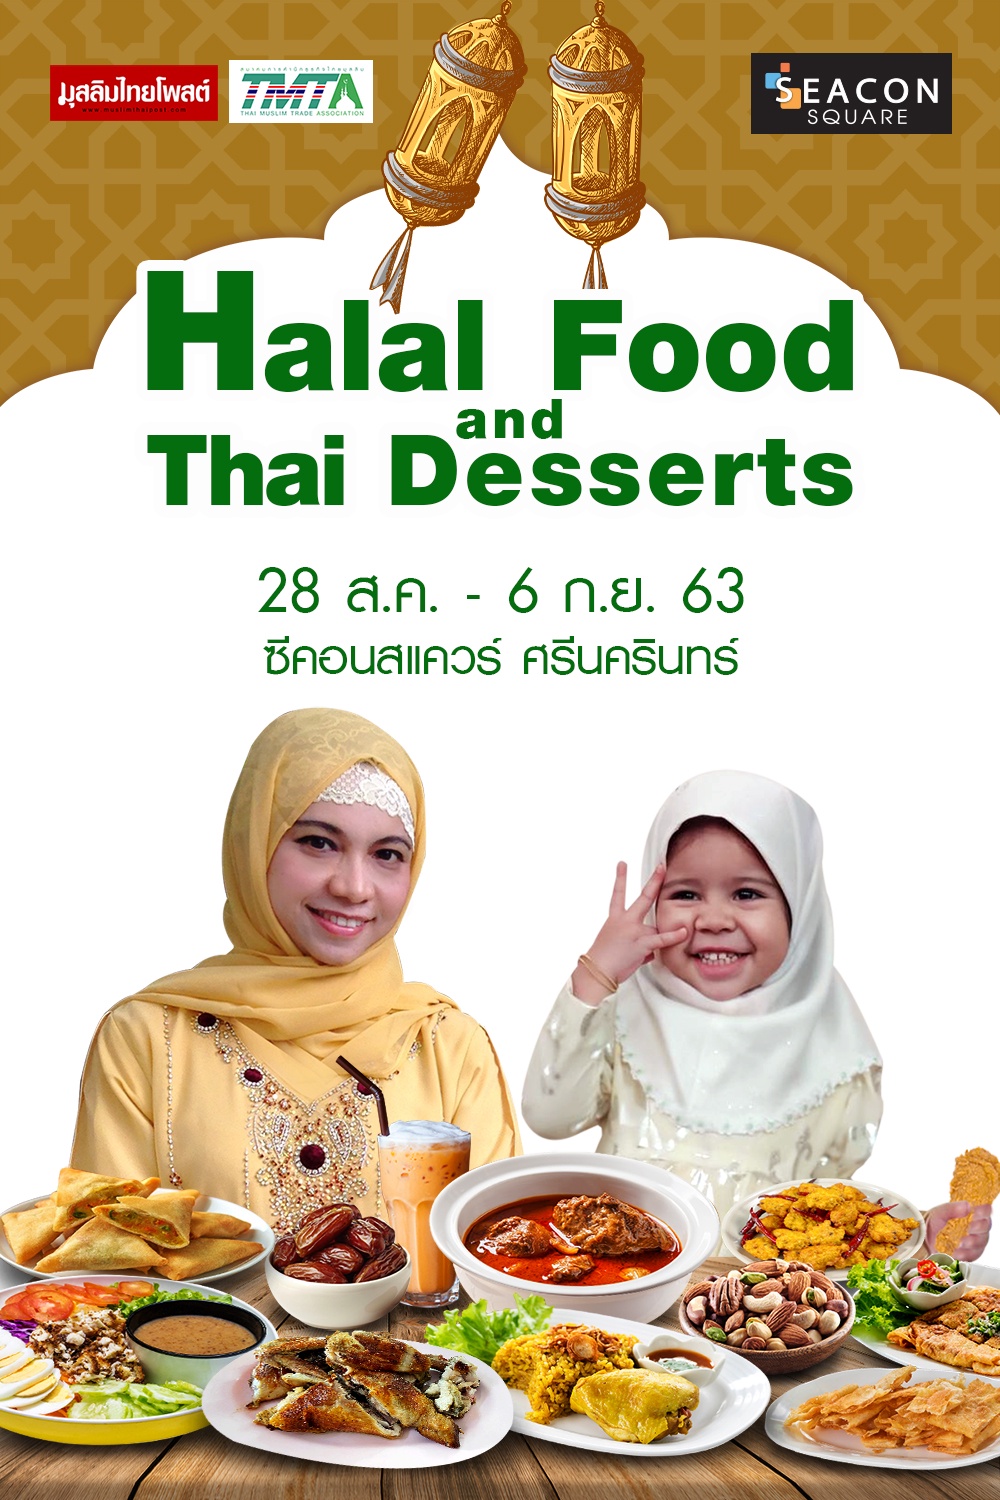 ซีคอนสแควร์ จัดงาน Halal Food and Thai Desserts เสิร์ฟสารพัดเมนูอาหารฮาลาลครั้งใหญ่แห่งปี